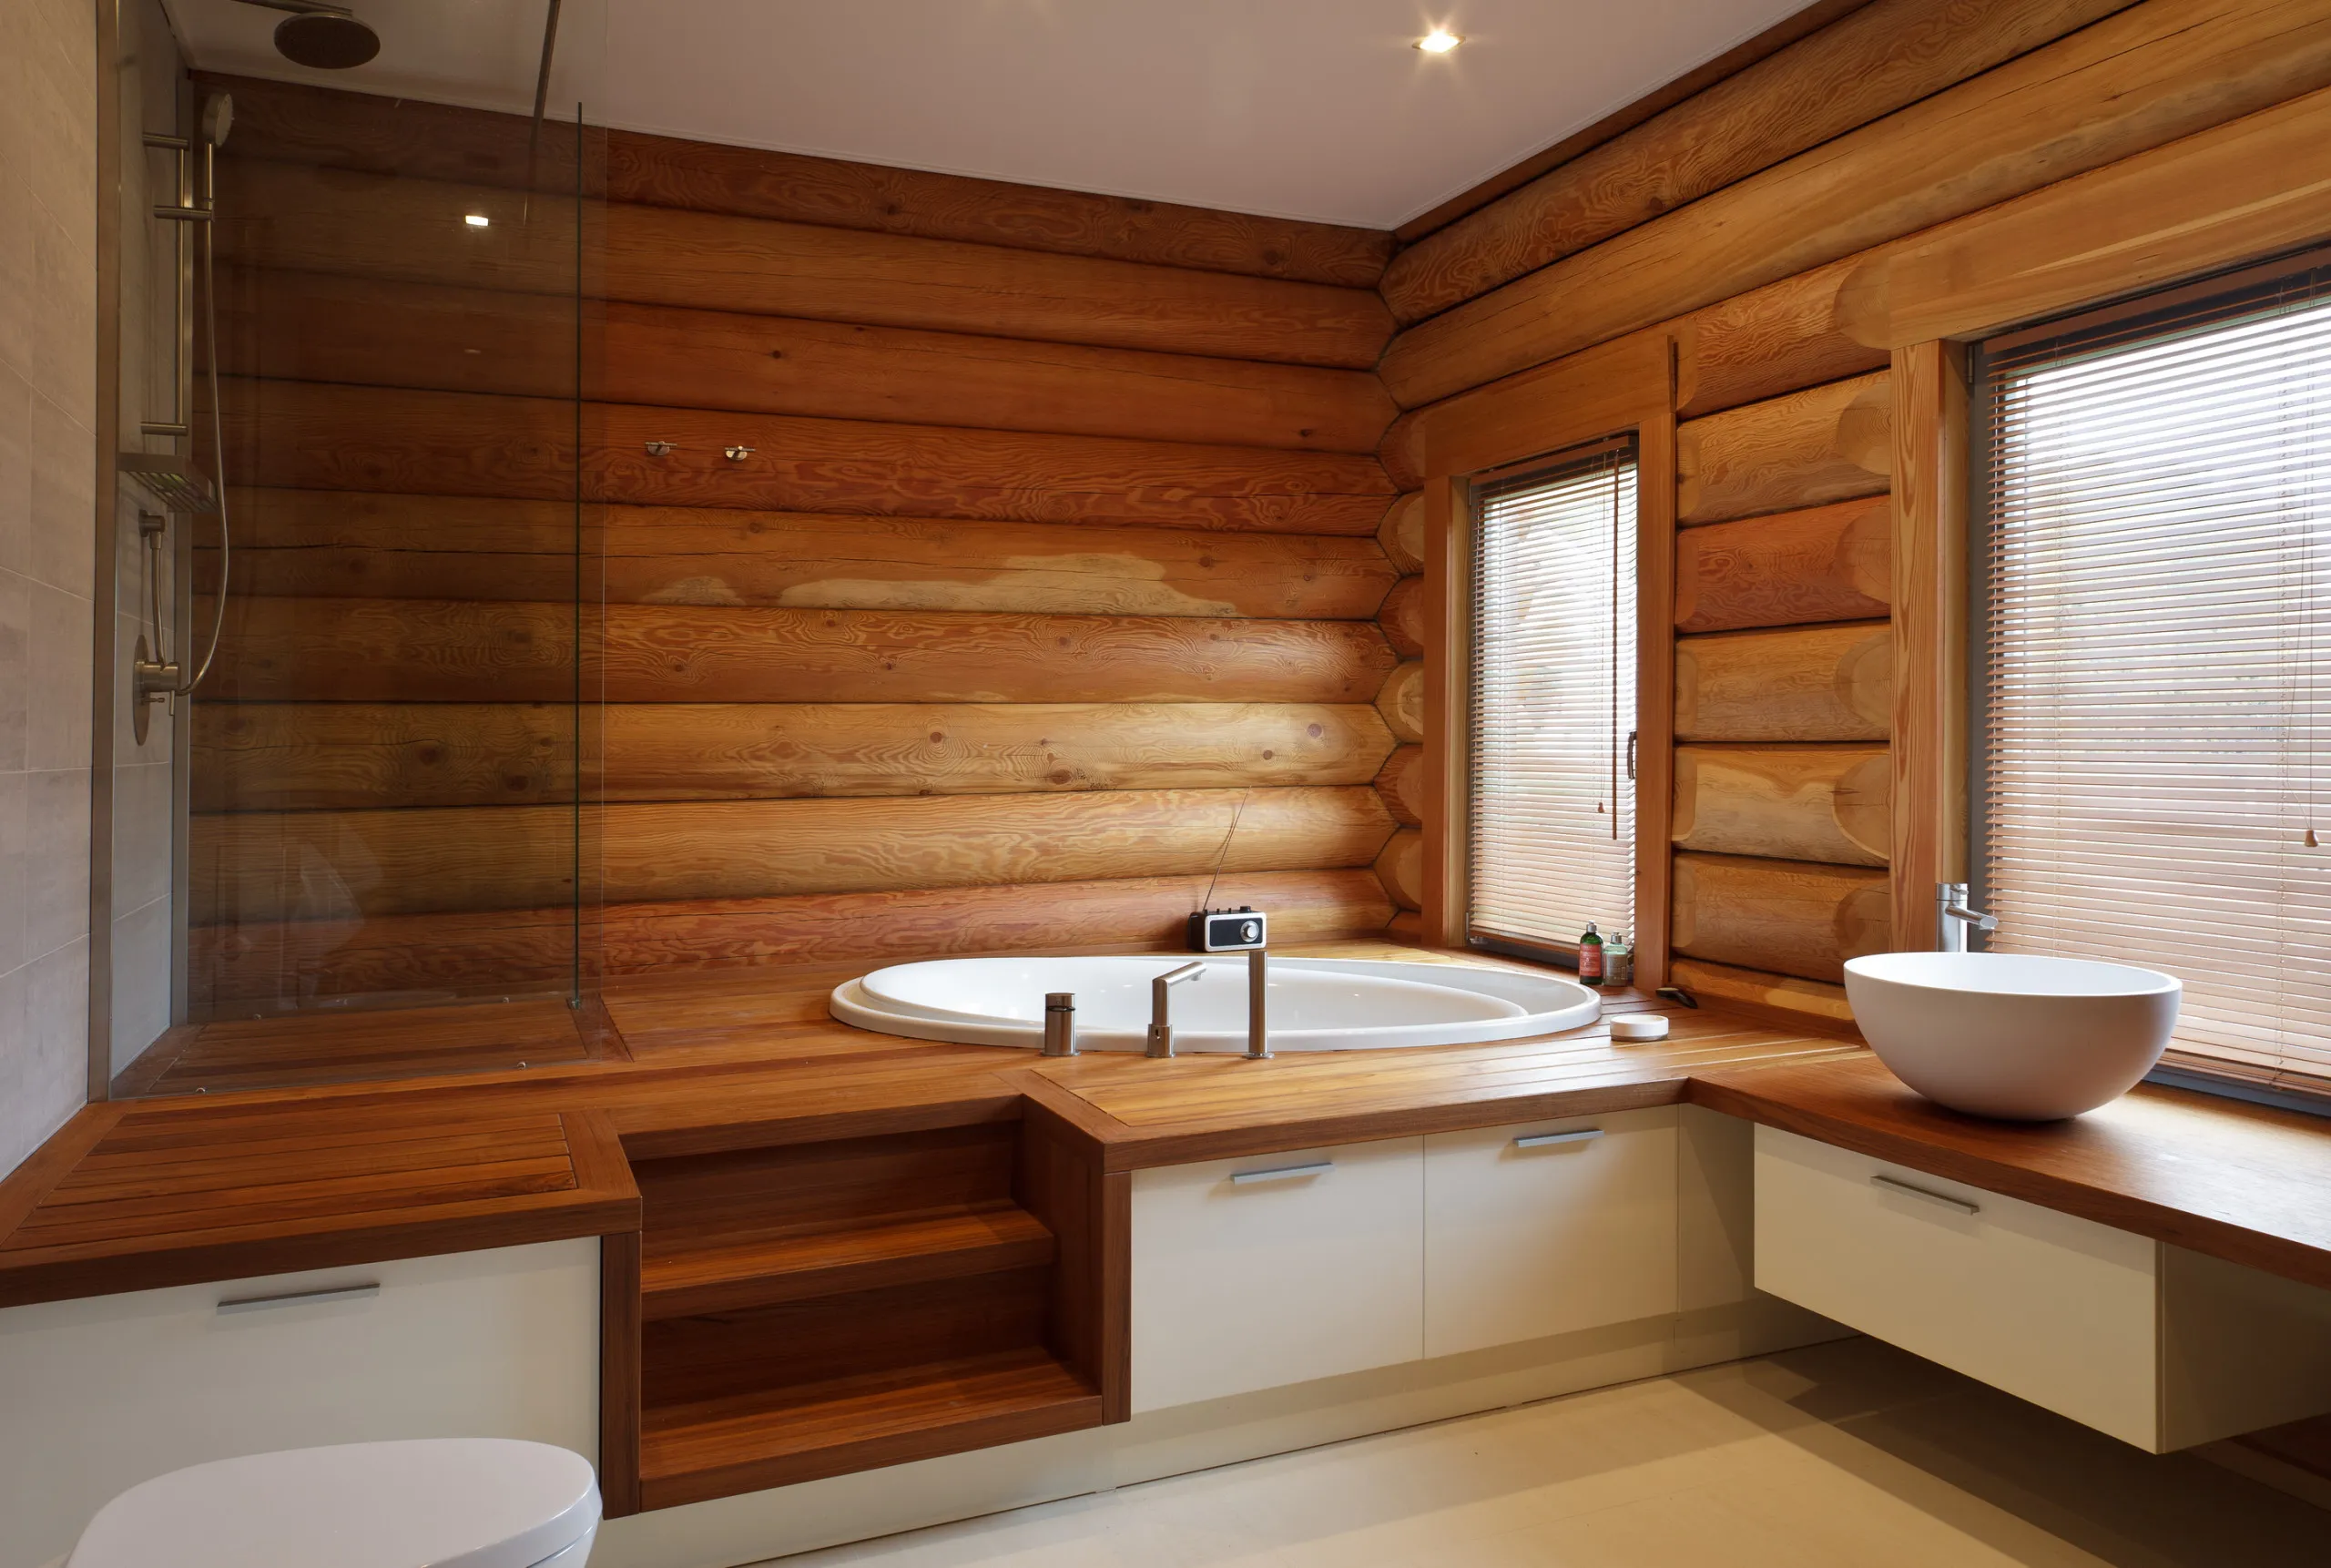 Отделка деревянной комнаты. Санузел в деревянном доме. Ванная отделанная деревом. Ванная в деревянном доме. Ванная в бревенчатом доме.